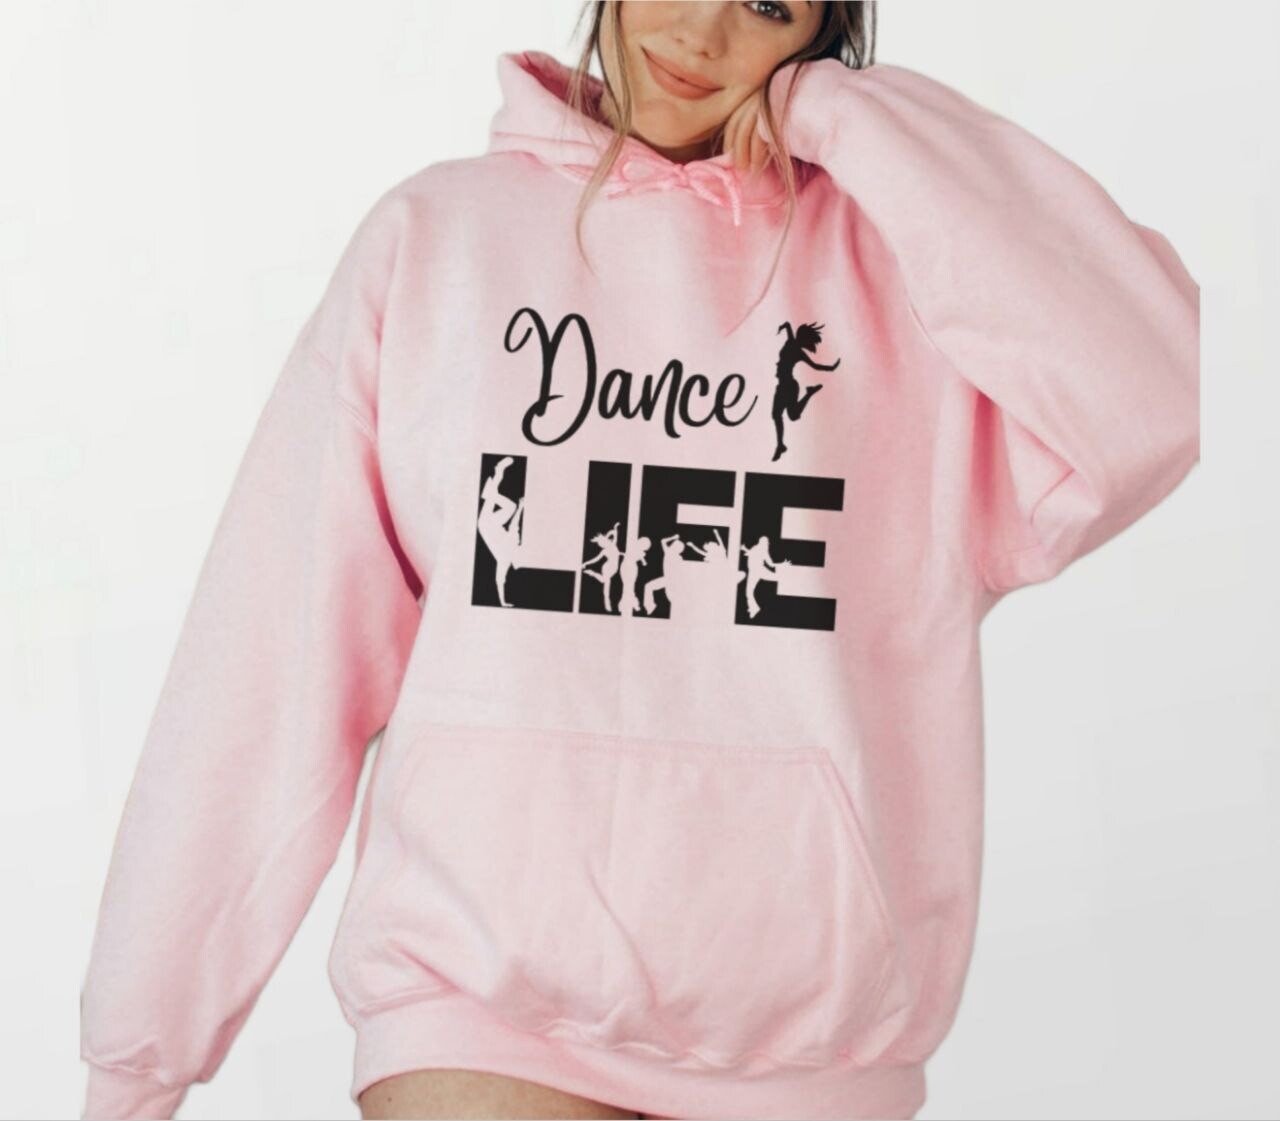 Dance life_Women's Elite Hoodie pink